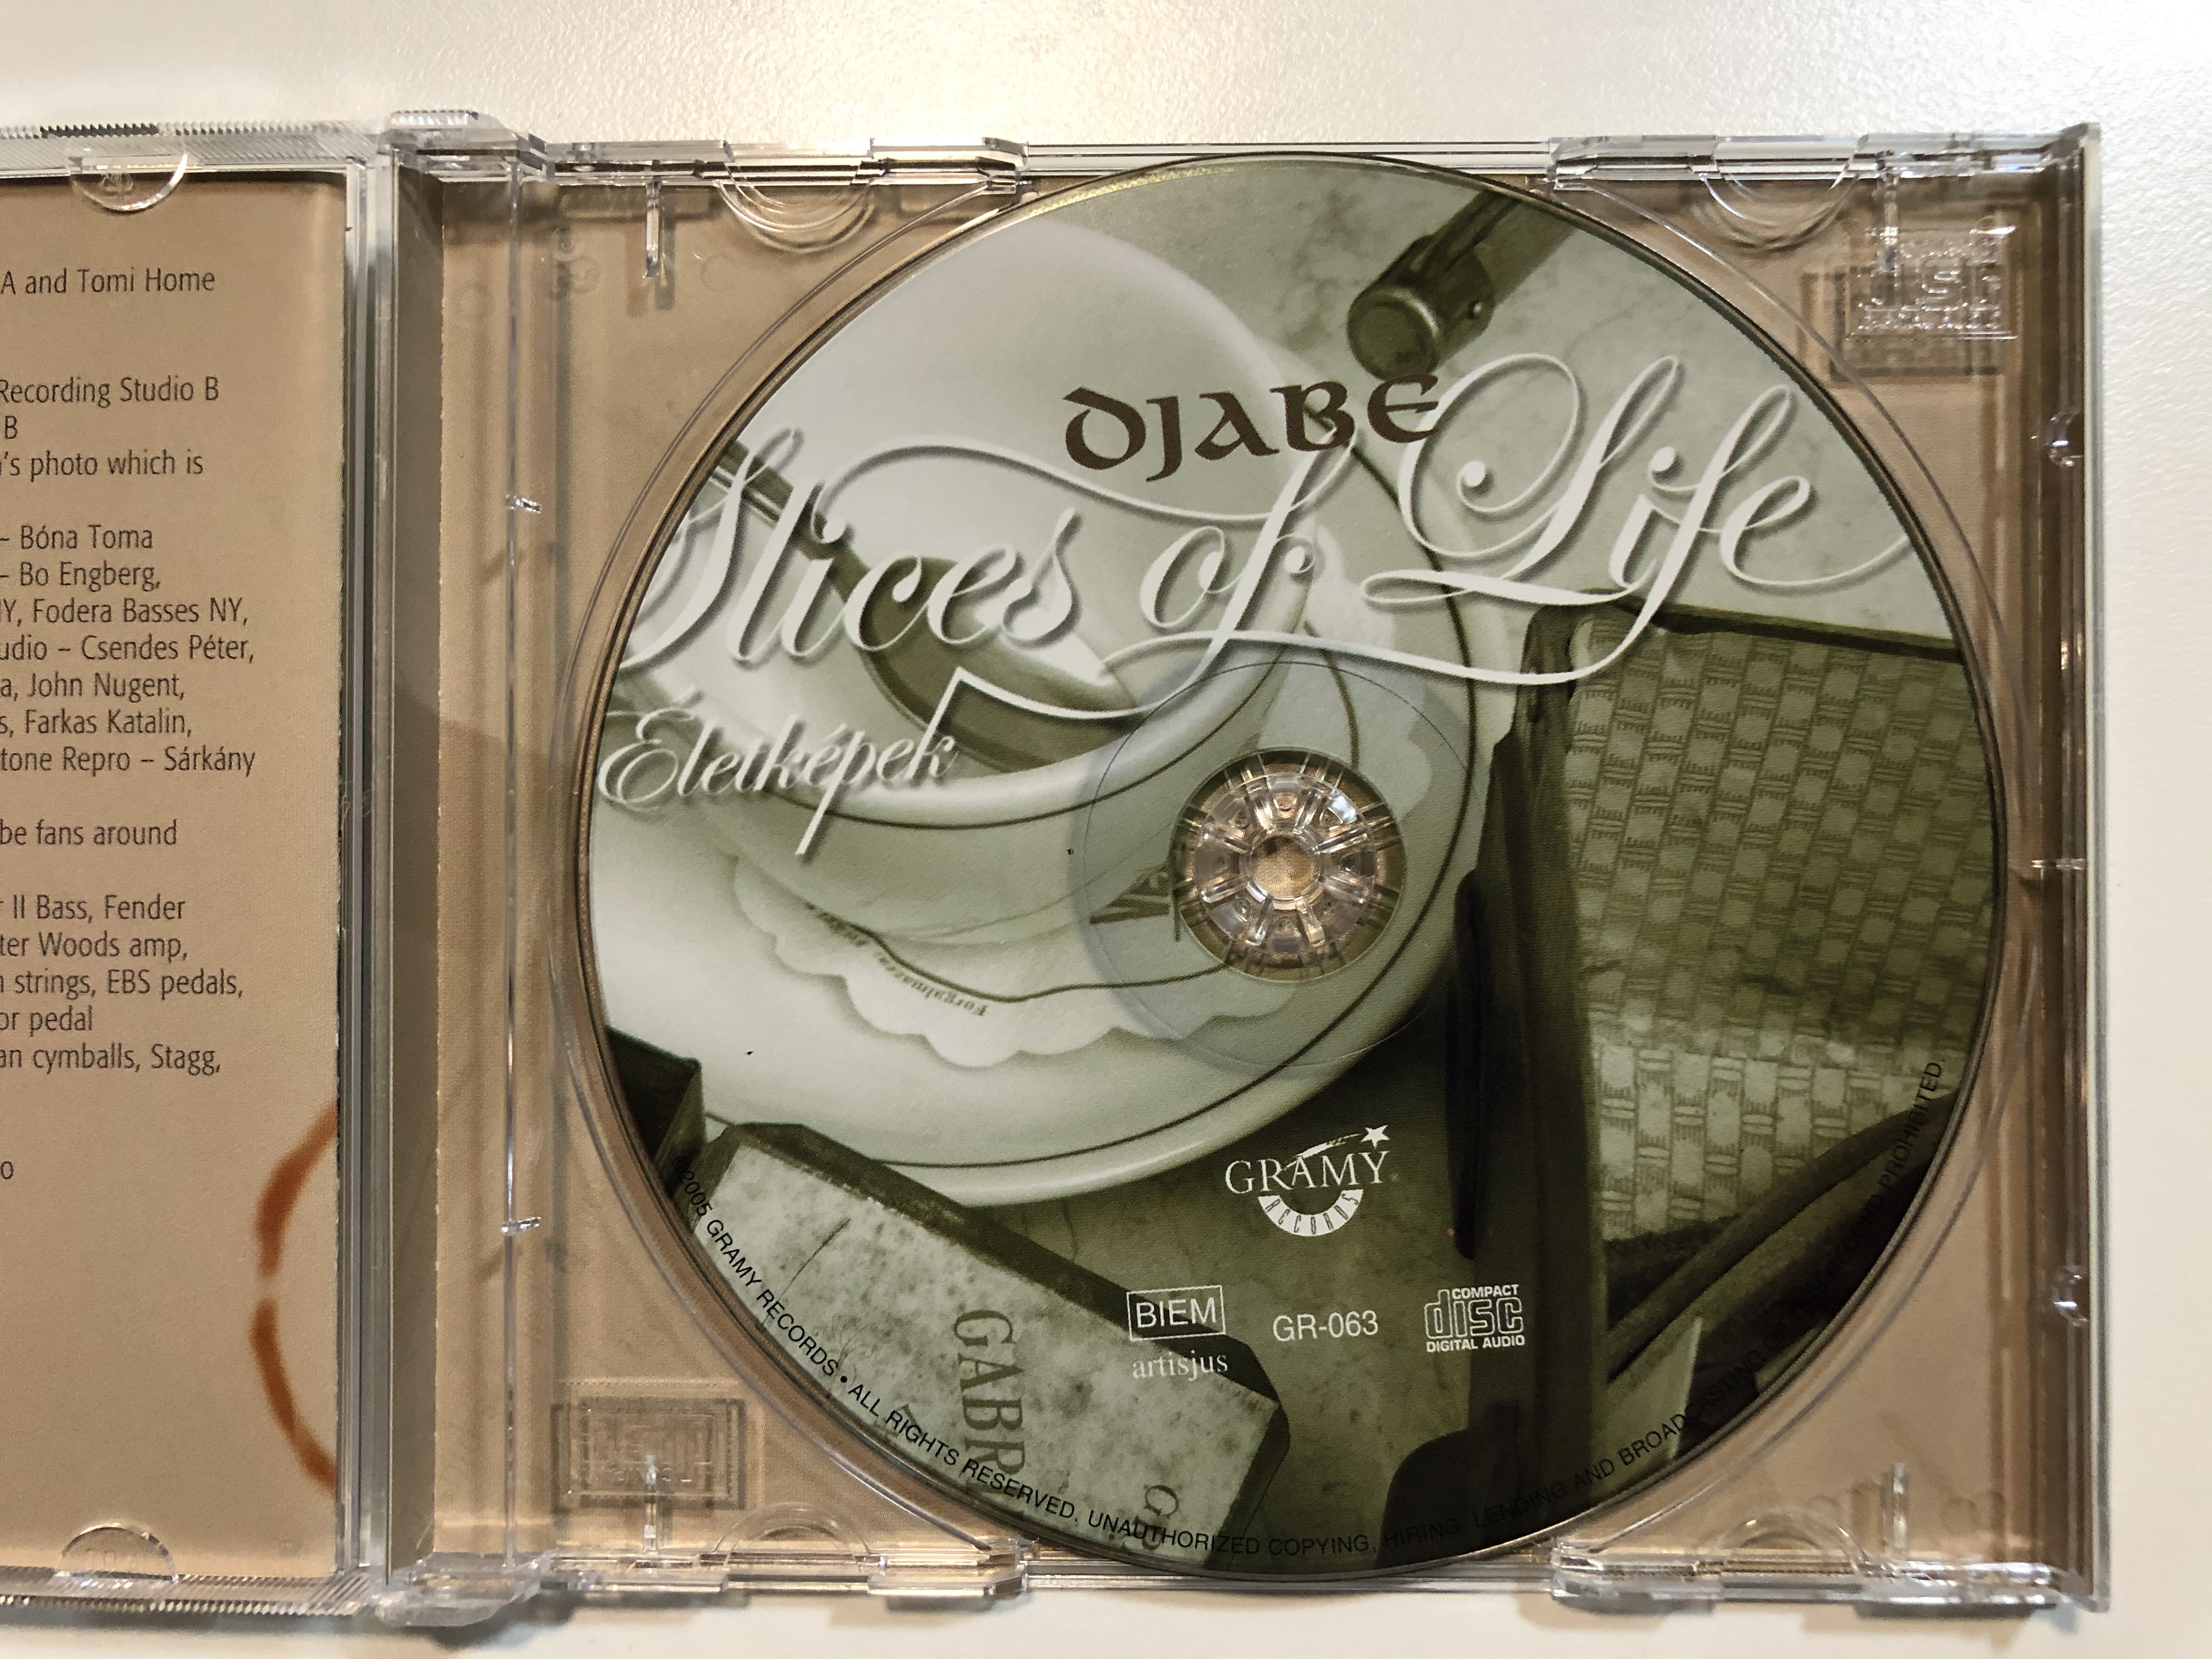 djabe-slices-of-life-letk-pek-gramy-records-audio-cd-2005-gr-063-5-.jpg